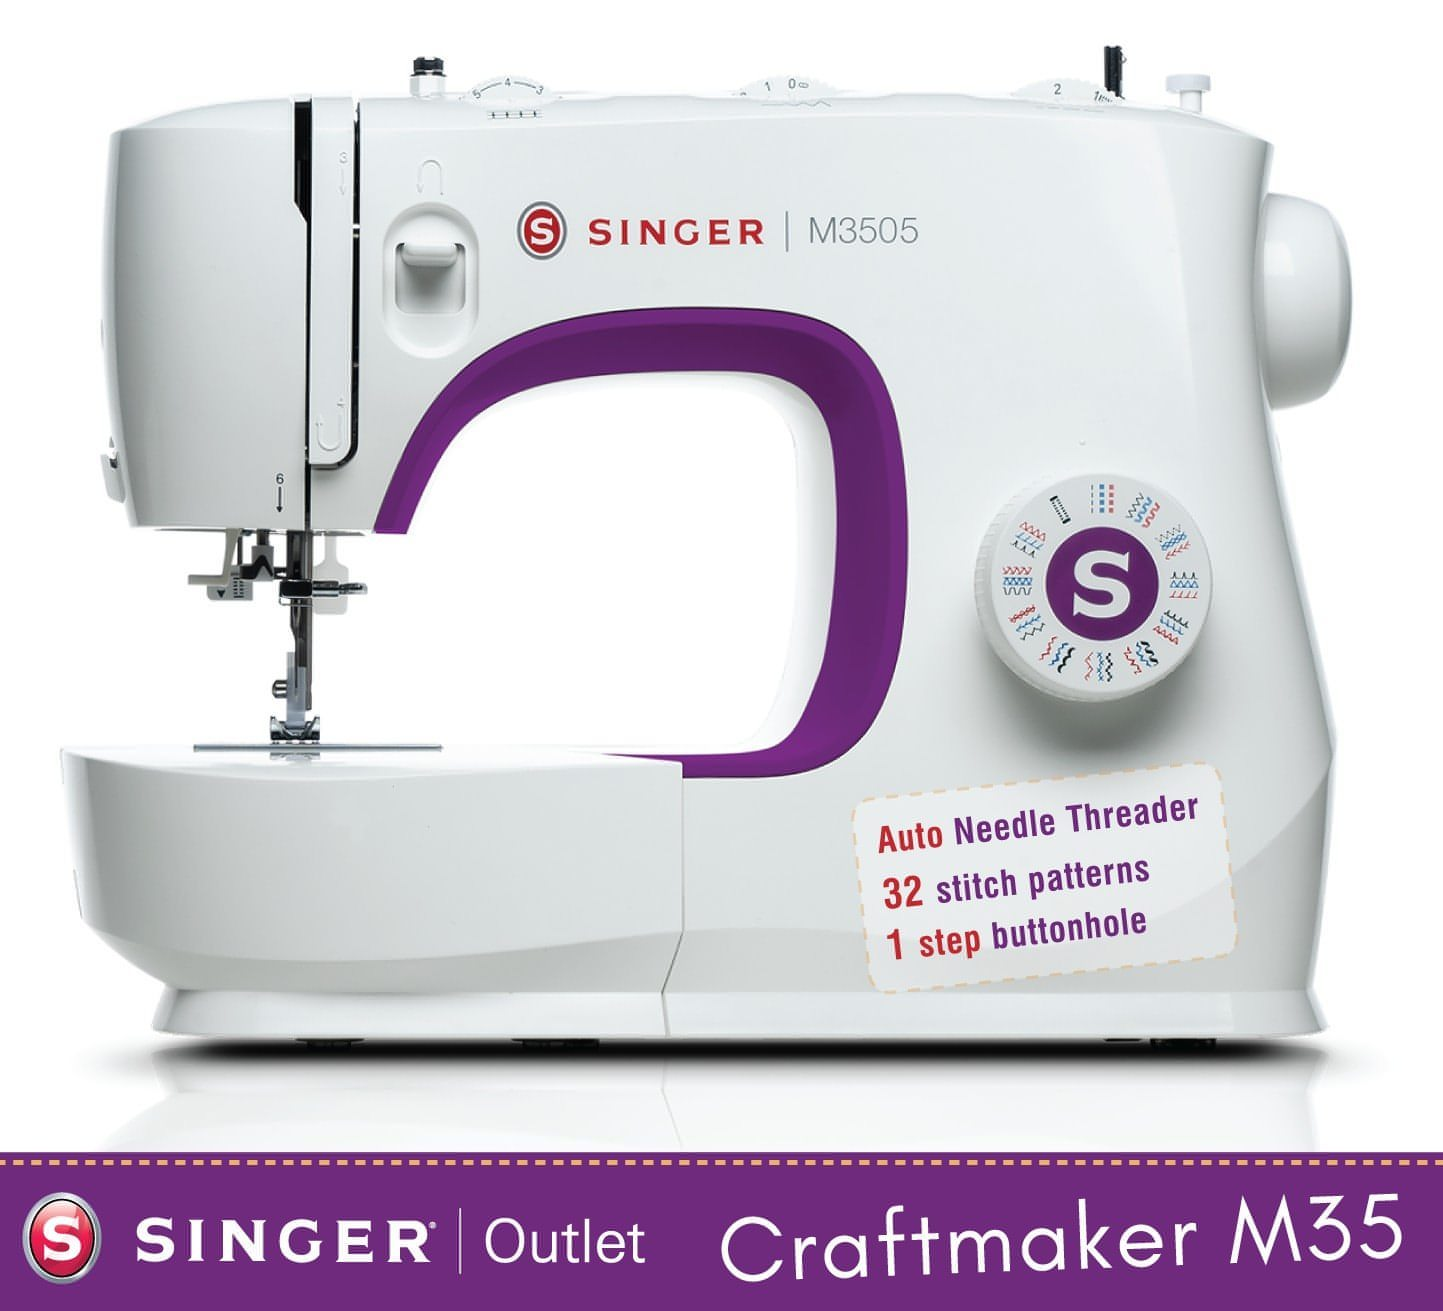 Singer CraftMaker M35 Sewing Machine - Auto threader, 32 stitch patterns, overlocking and stretch stitches, great all round machine